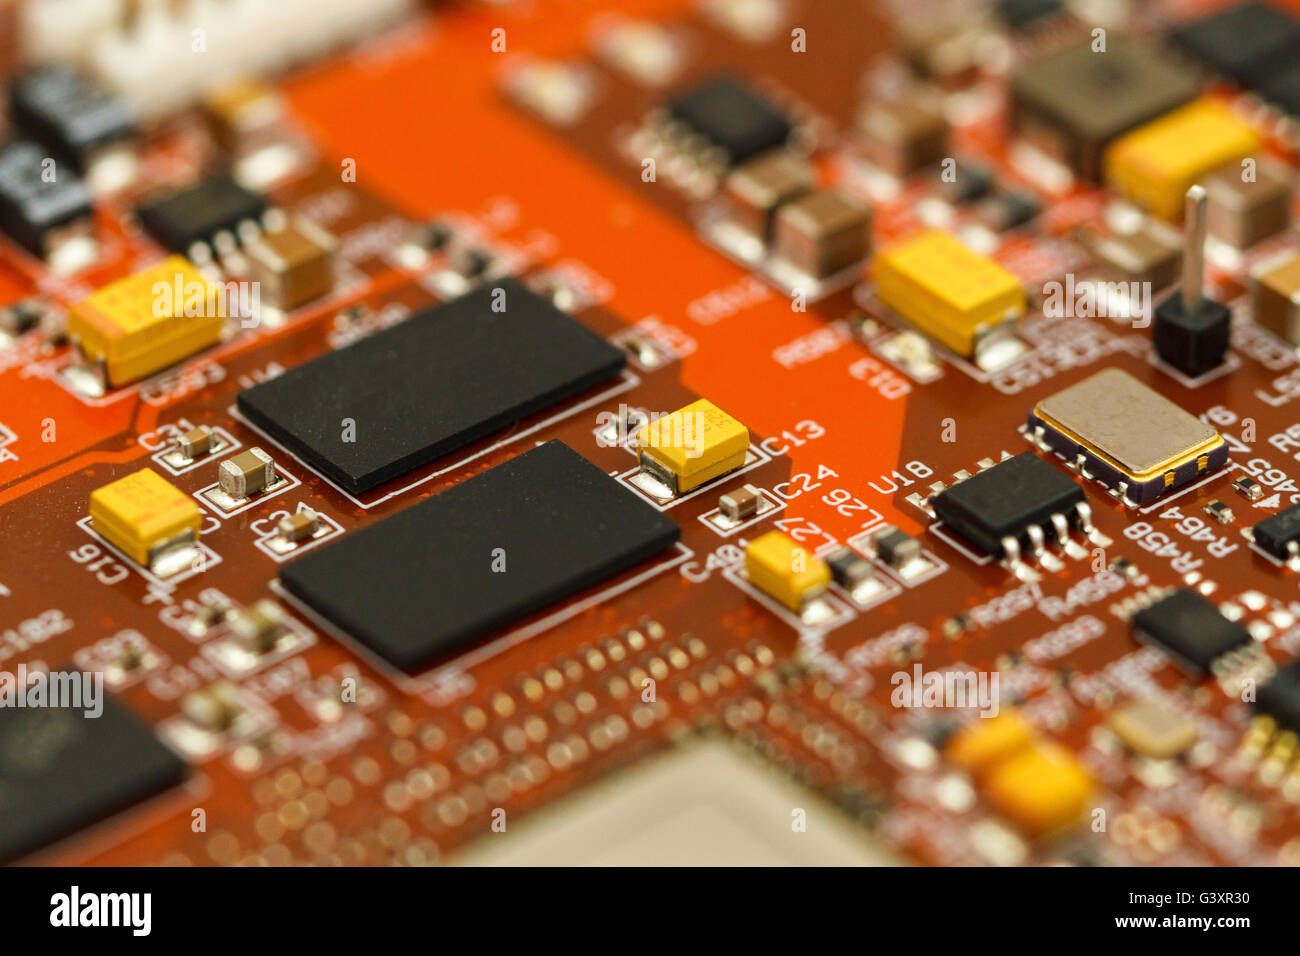 Placa de circuito impreso con ICs, chip condensadores de tántalo, condensadores, resistencias y chips. Foto de stock